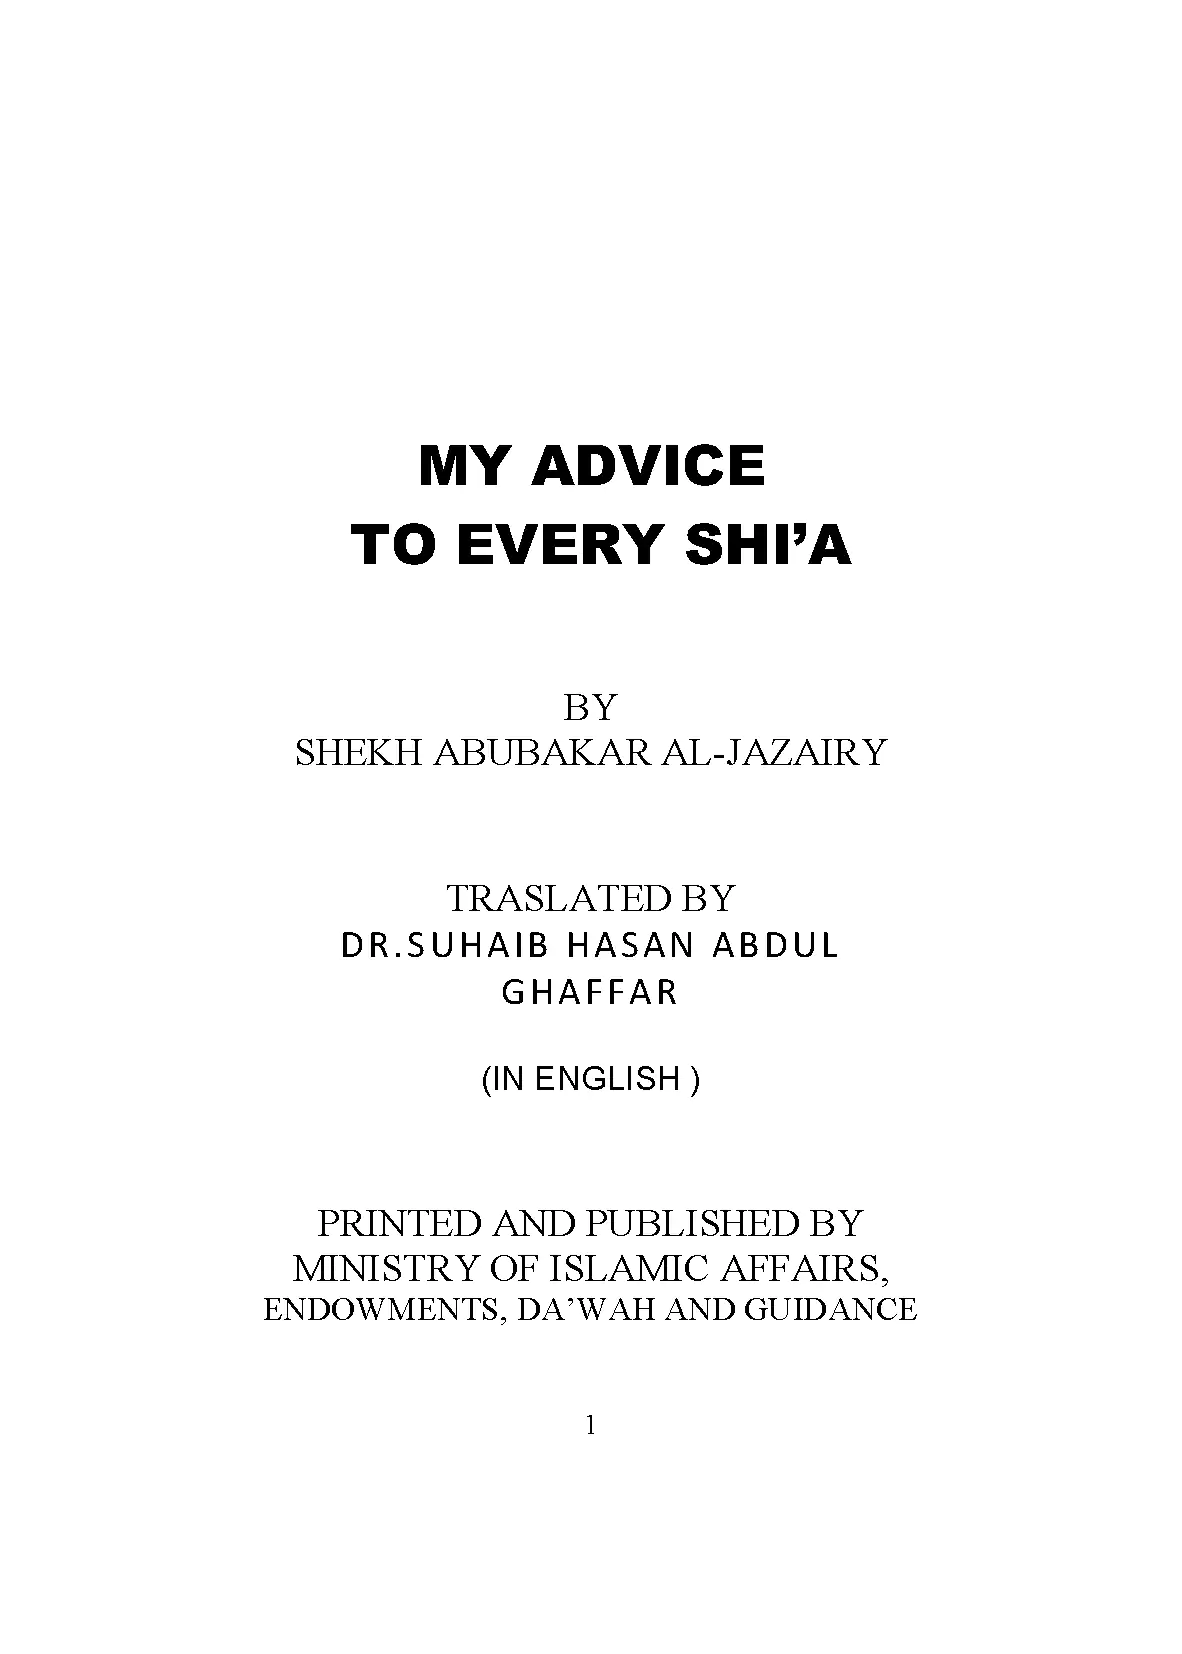 MY ADVICE TO EVERY SHI’A